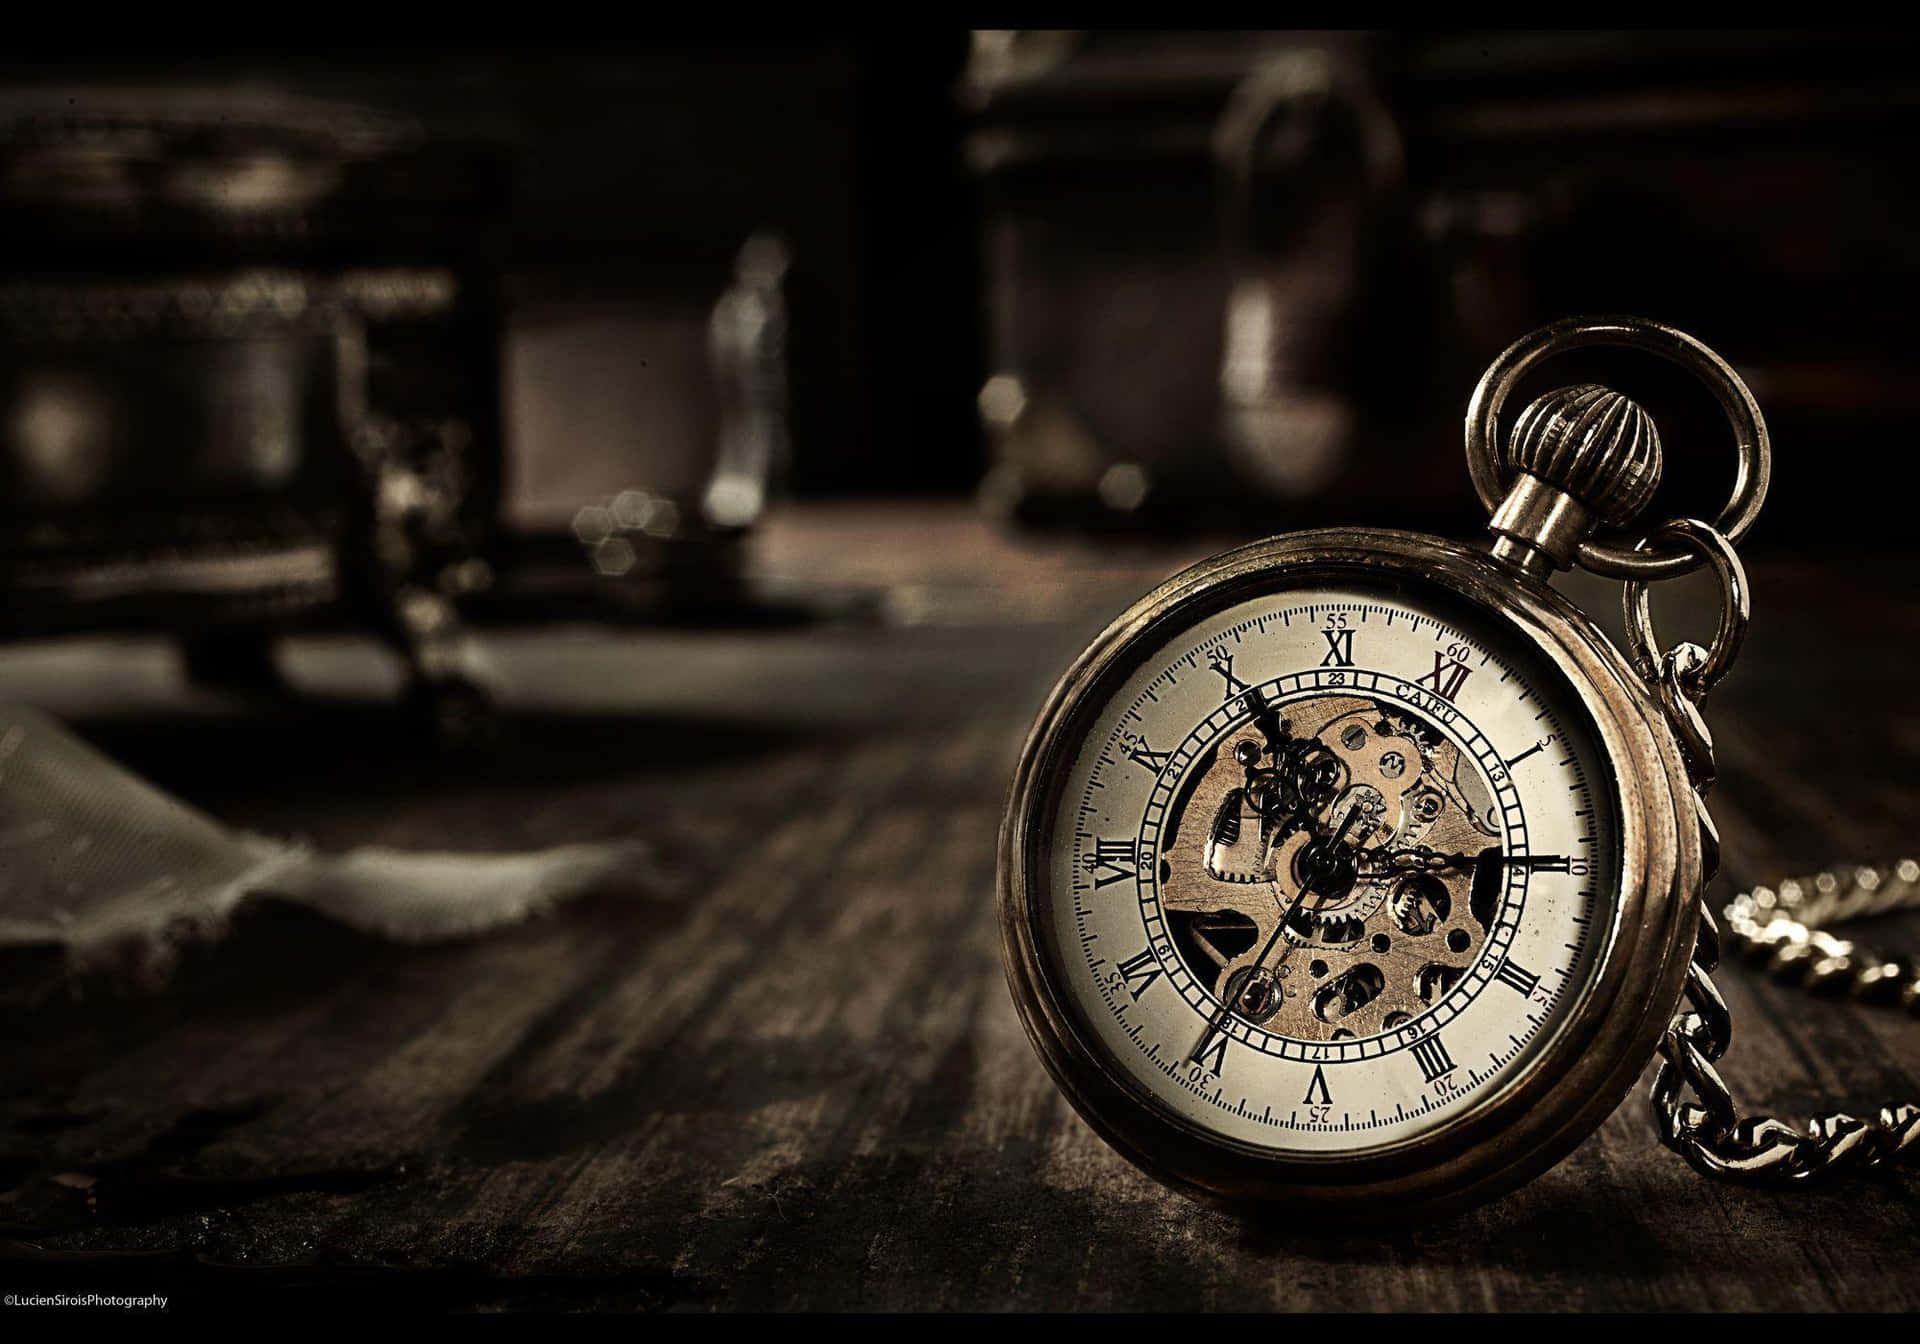 Imagemque Mostra A Beleza Do Tempo Passando - Um Relógio Intrincadamente Projetado Em Estilo Vintage.